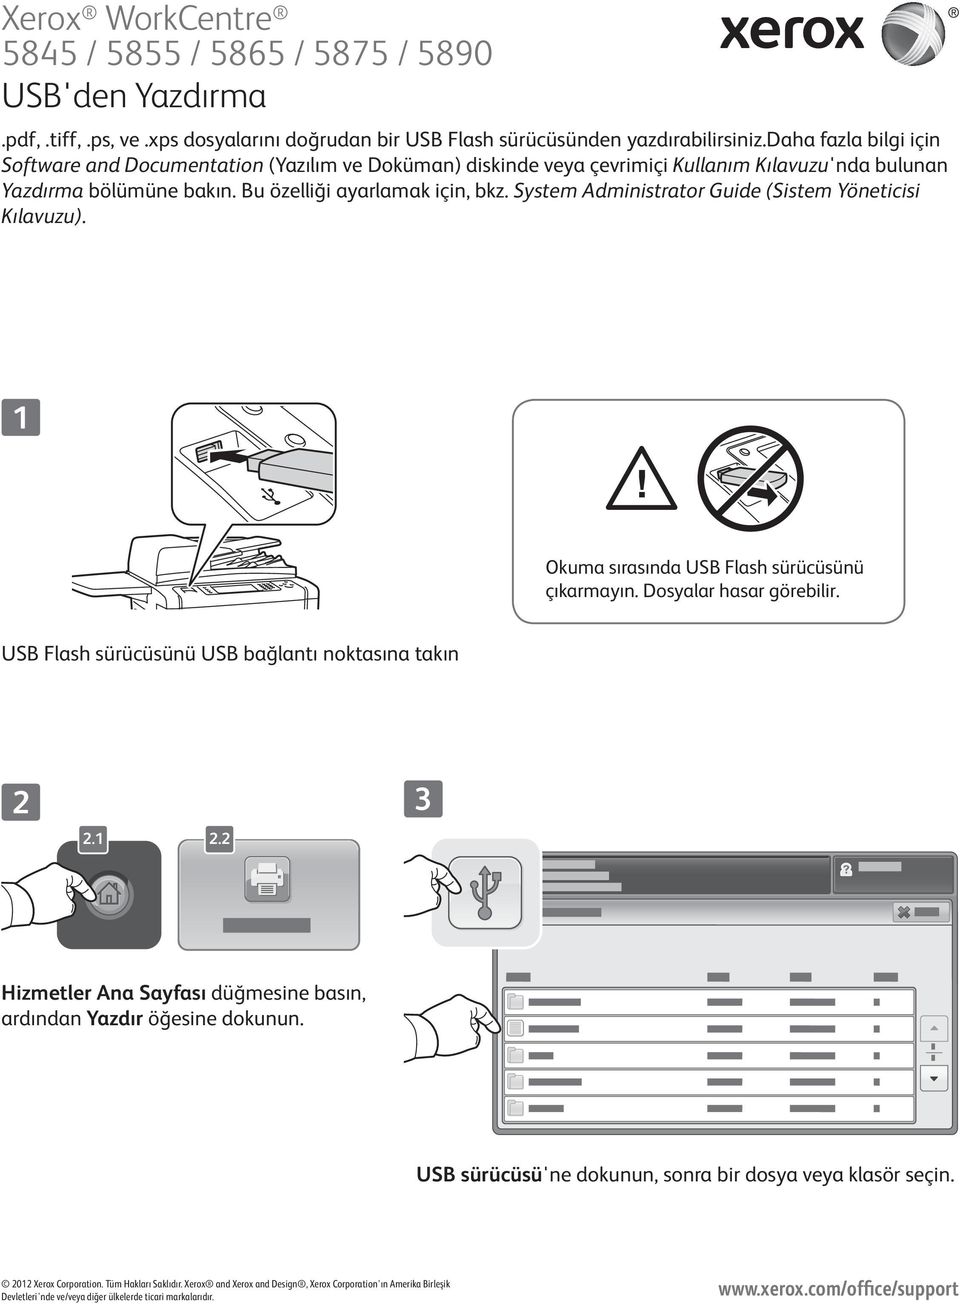 System Administrator Guide (Sistem Yöneticisi Kılavuzu). Okuma sırasında USB Flash sürücüsünü çıkarmayın. Dosyalar hasar görebilir. USB Flash sürücüsünü USB bağlantı noktasına takın.